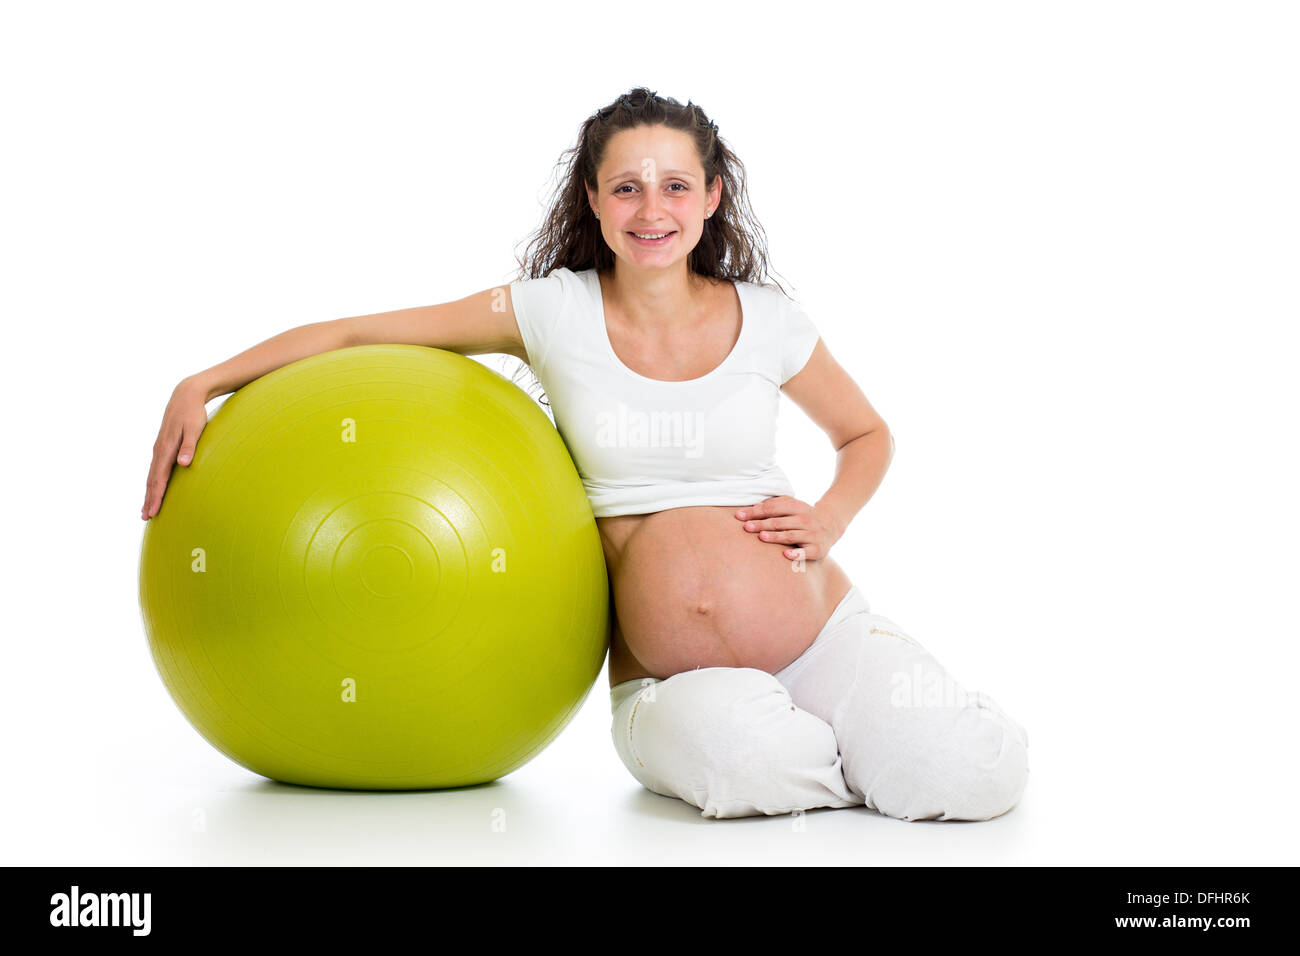 Schwangere Frau Übungen mit Gymnastikball Stockfotografie - Alamy